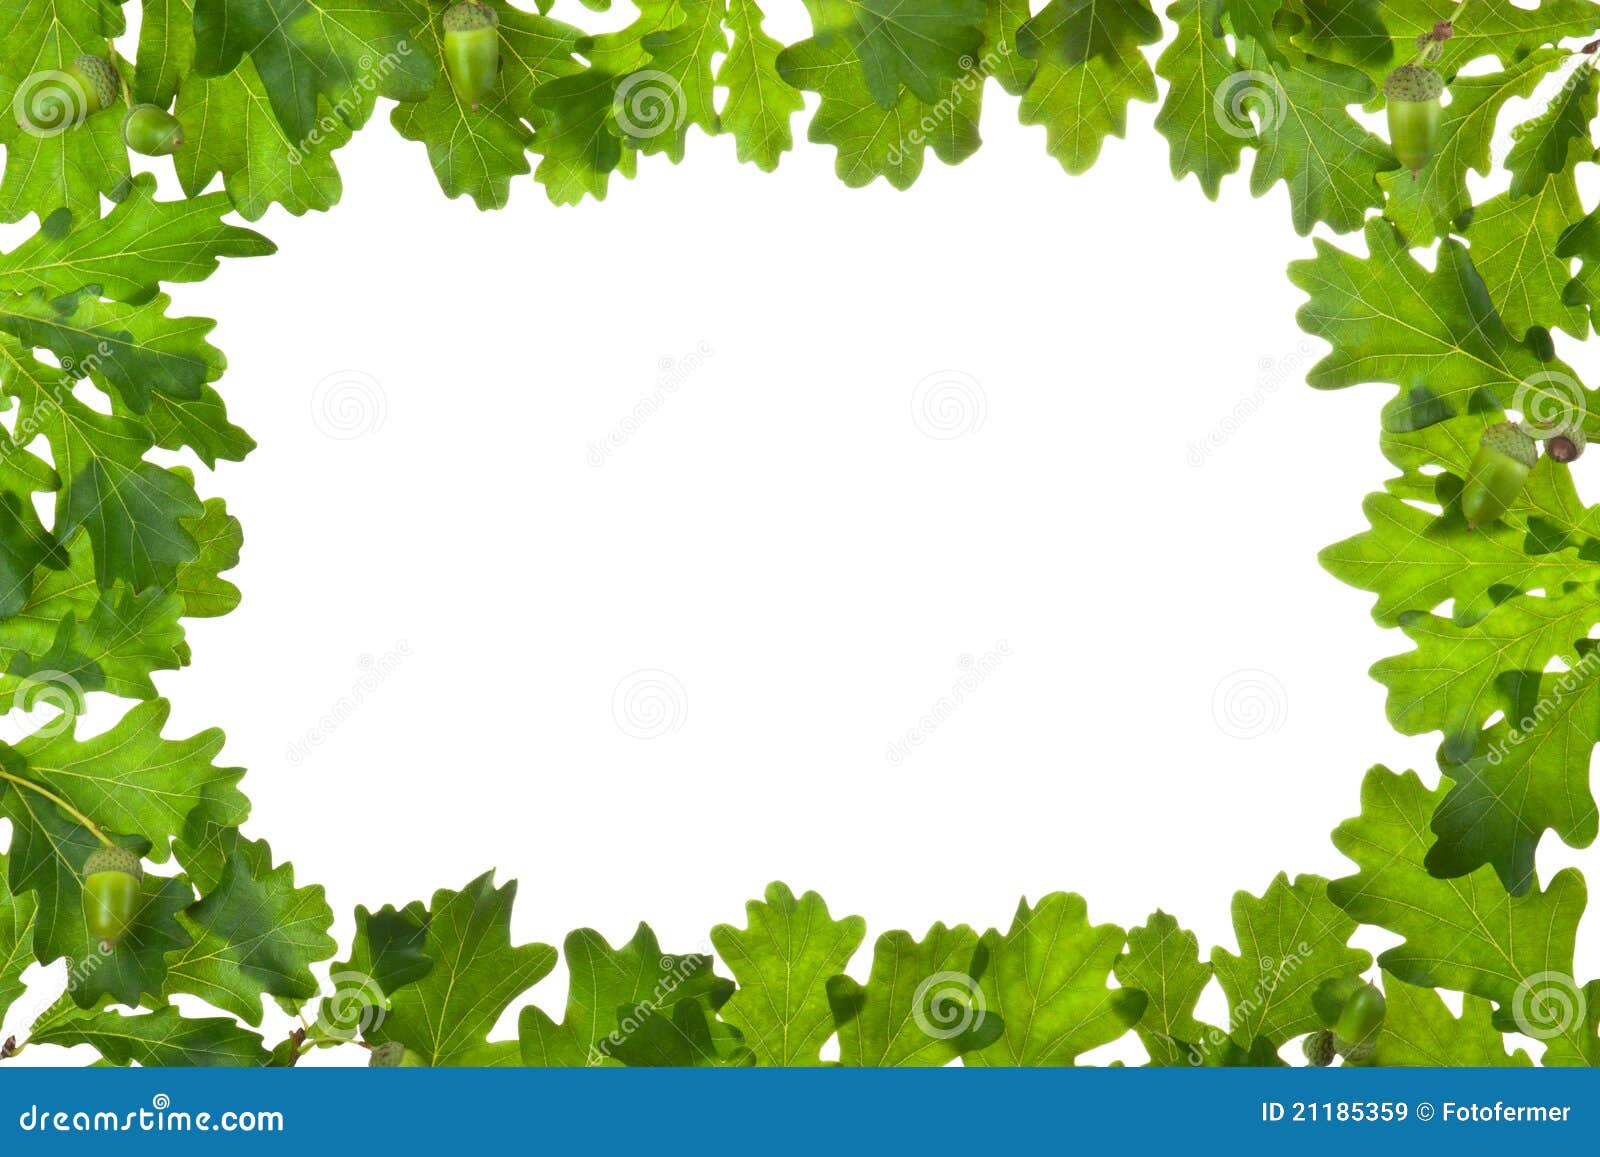 frame of oak leaves in backlight